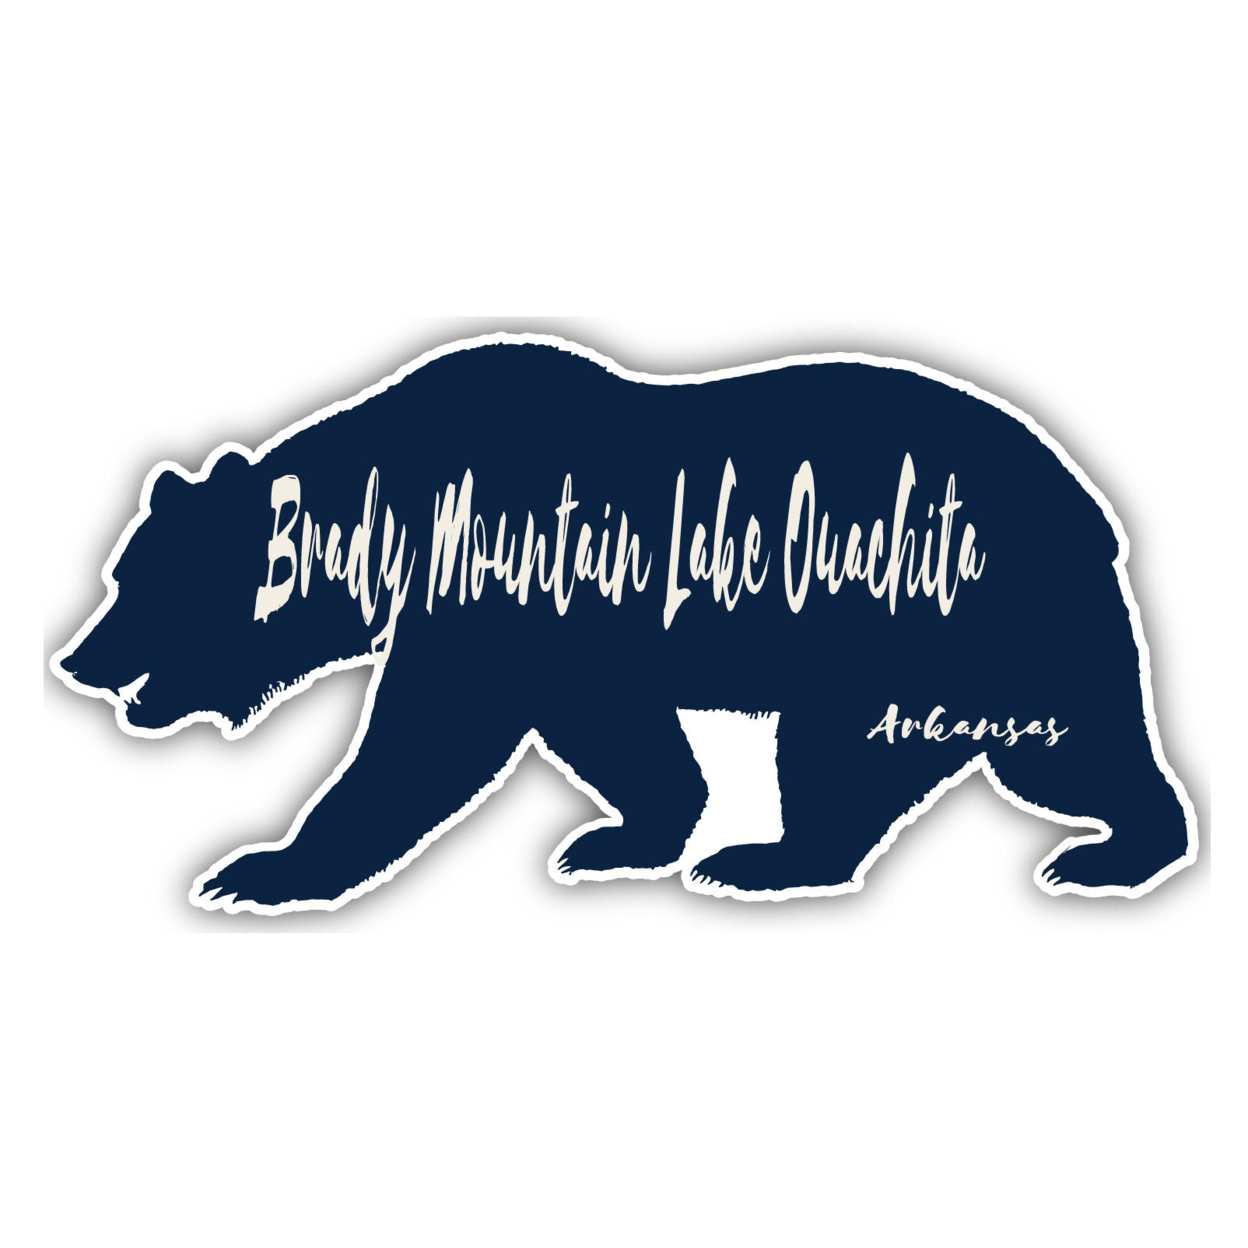 Brady Mountain Lake Ouachita Arkansas Souvenir Decorative Stickers (Choose Theme And Size) - 4-Pack, 10-Inch, Bear